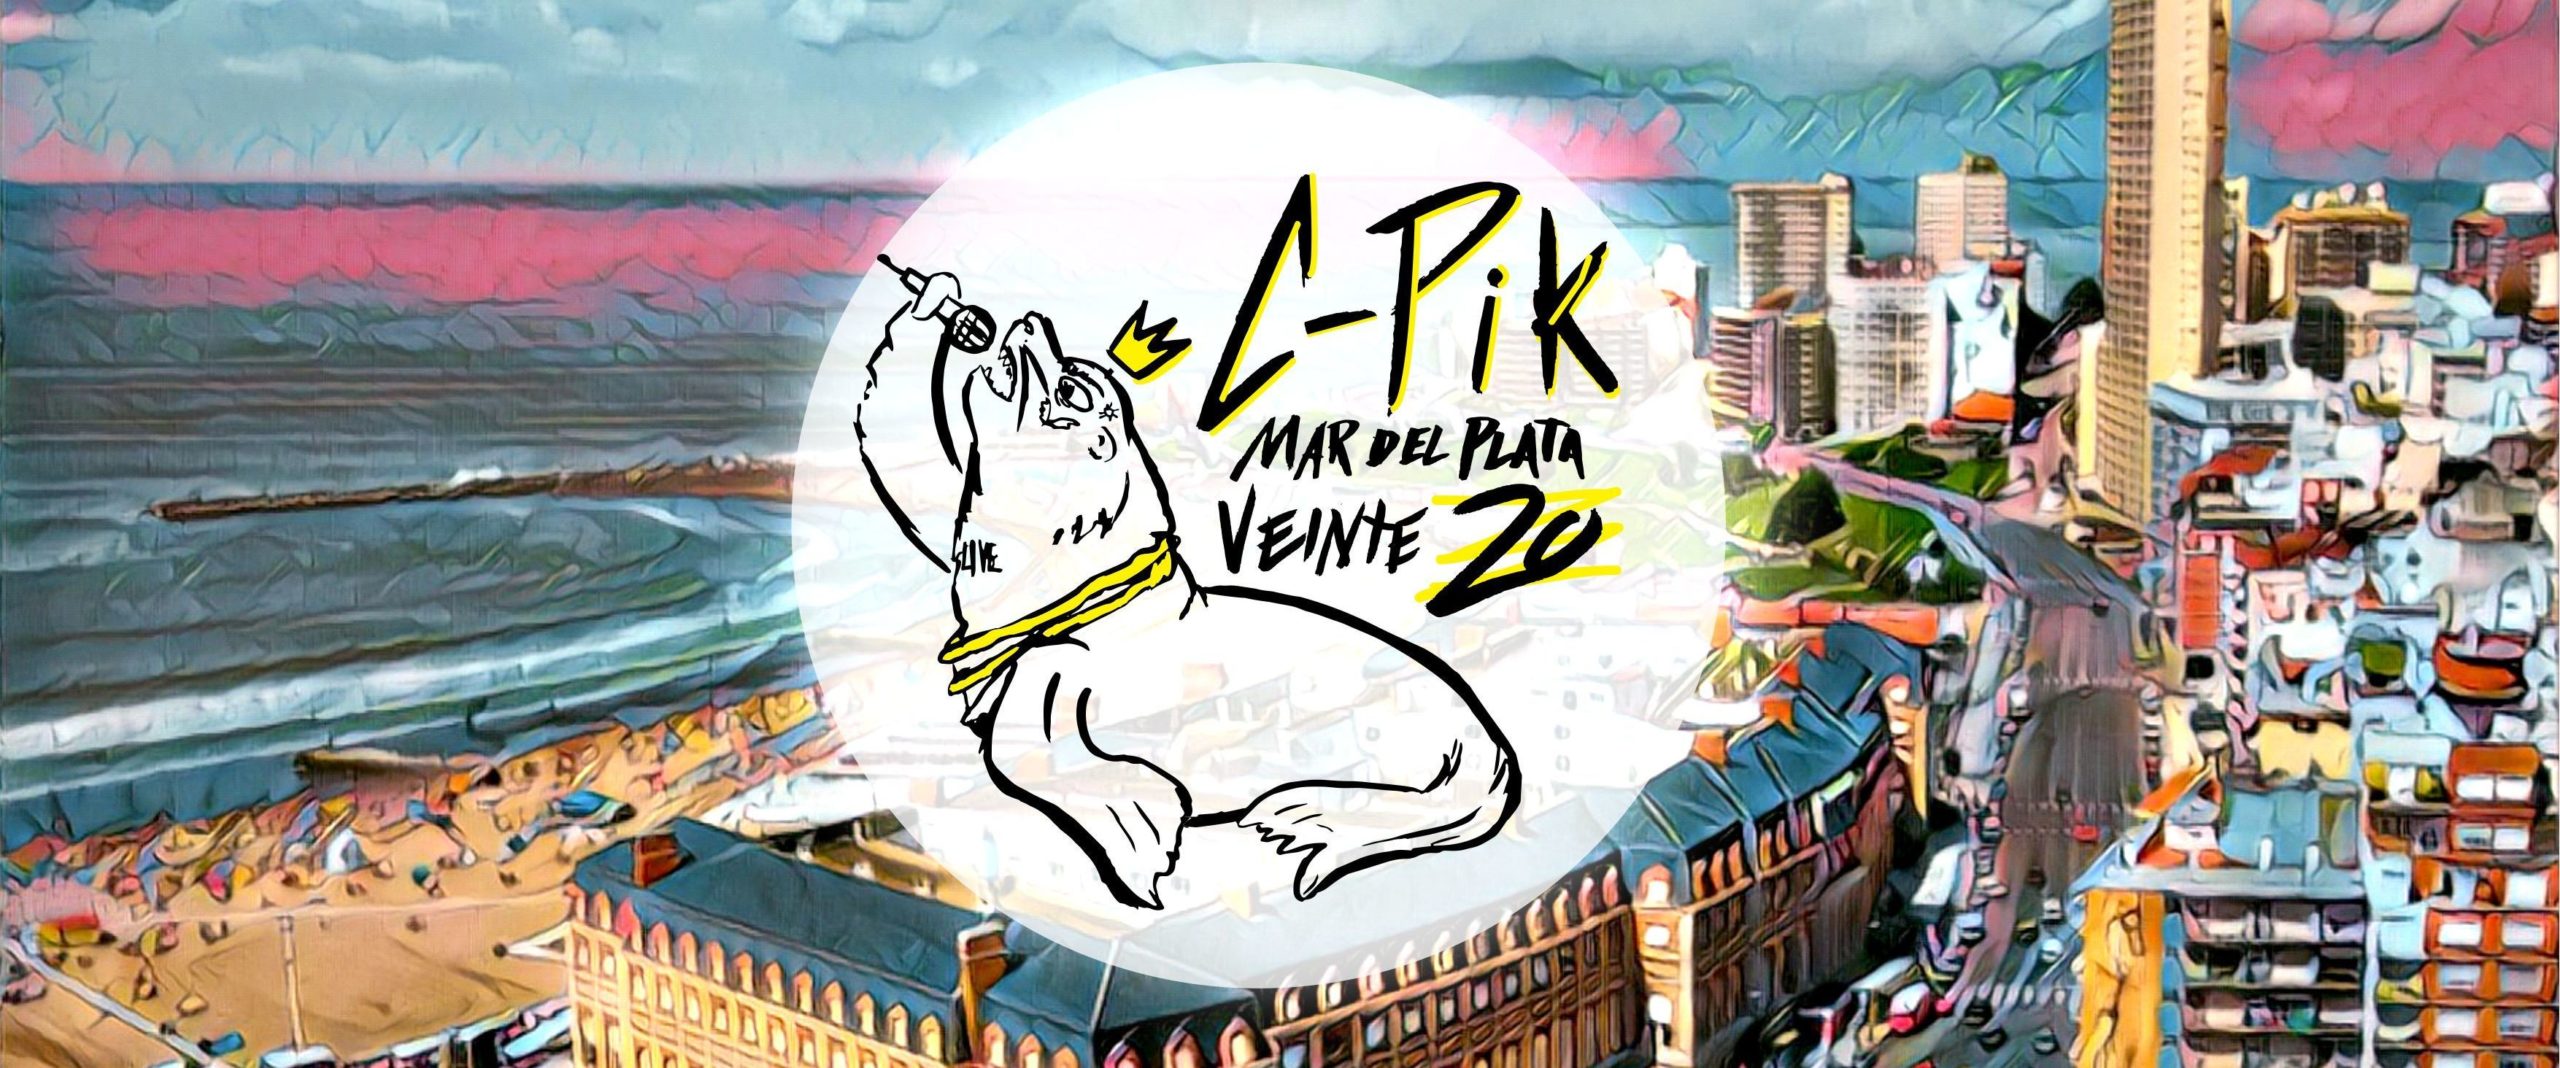 C-PIK Mar del Plata veinte20: ¡La fecha del 24 de enero se traslada al Club Once Unidos!